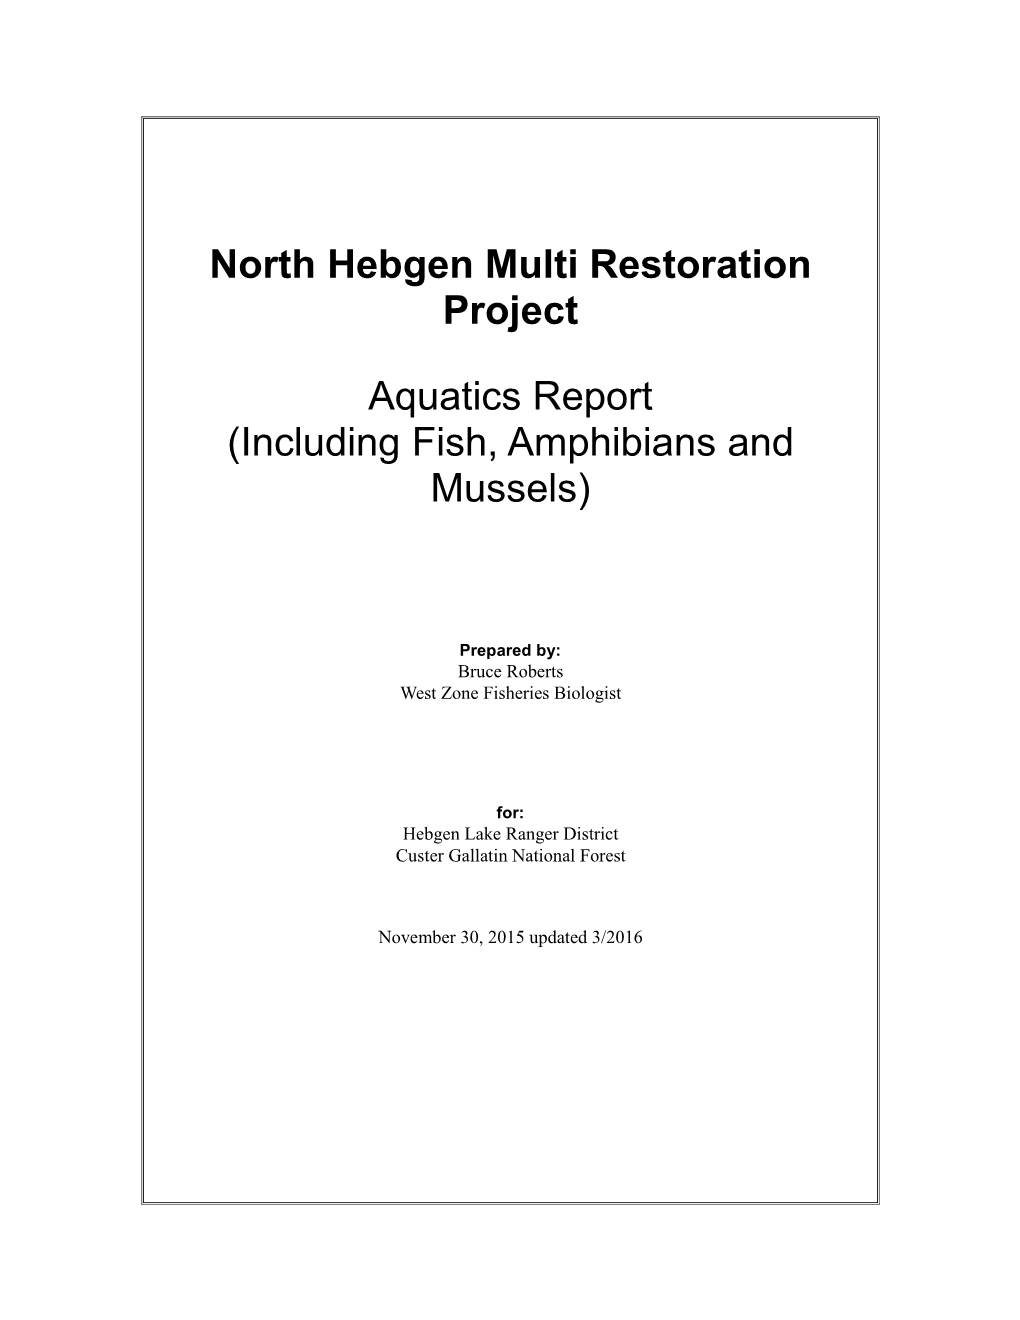 North Hebgen Multi Restoration Project Aquatics Report